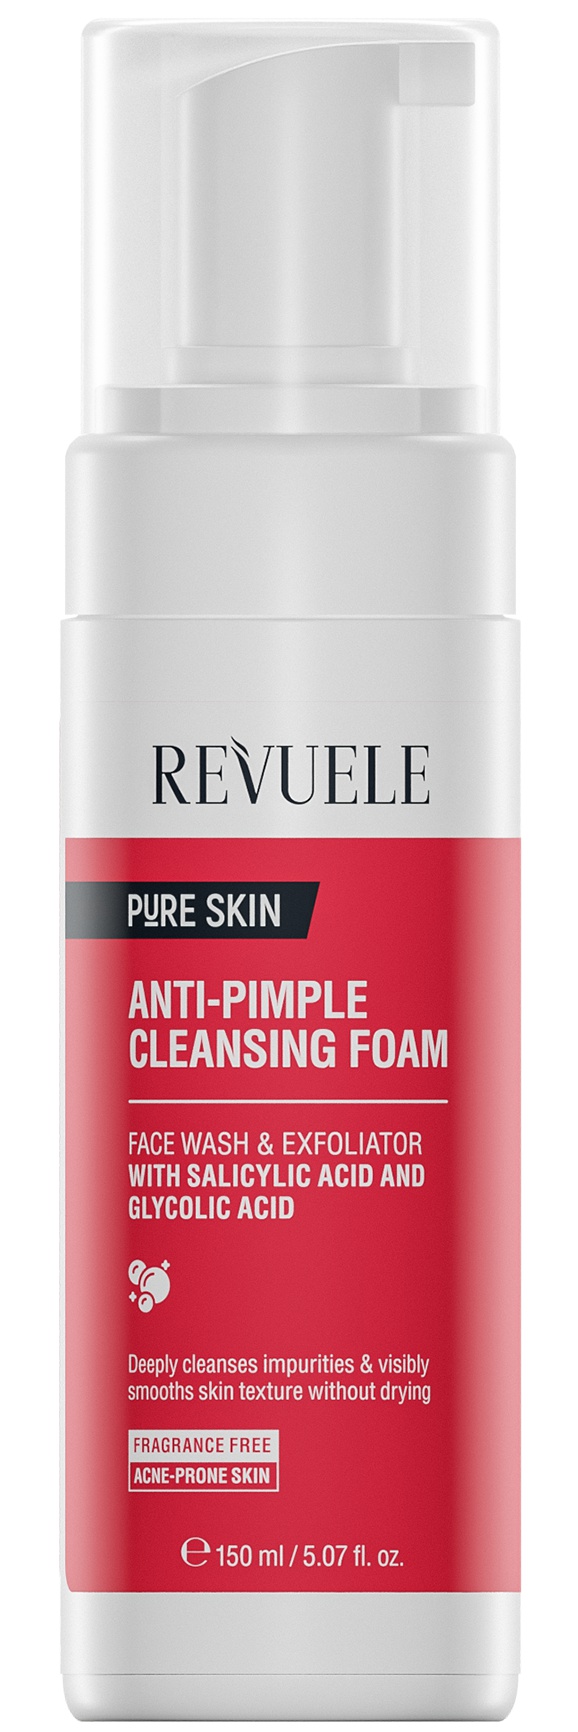 Revuele Pure Skin Anti-Pimple Cleansing Foam